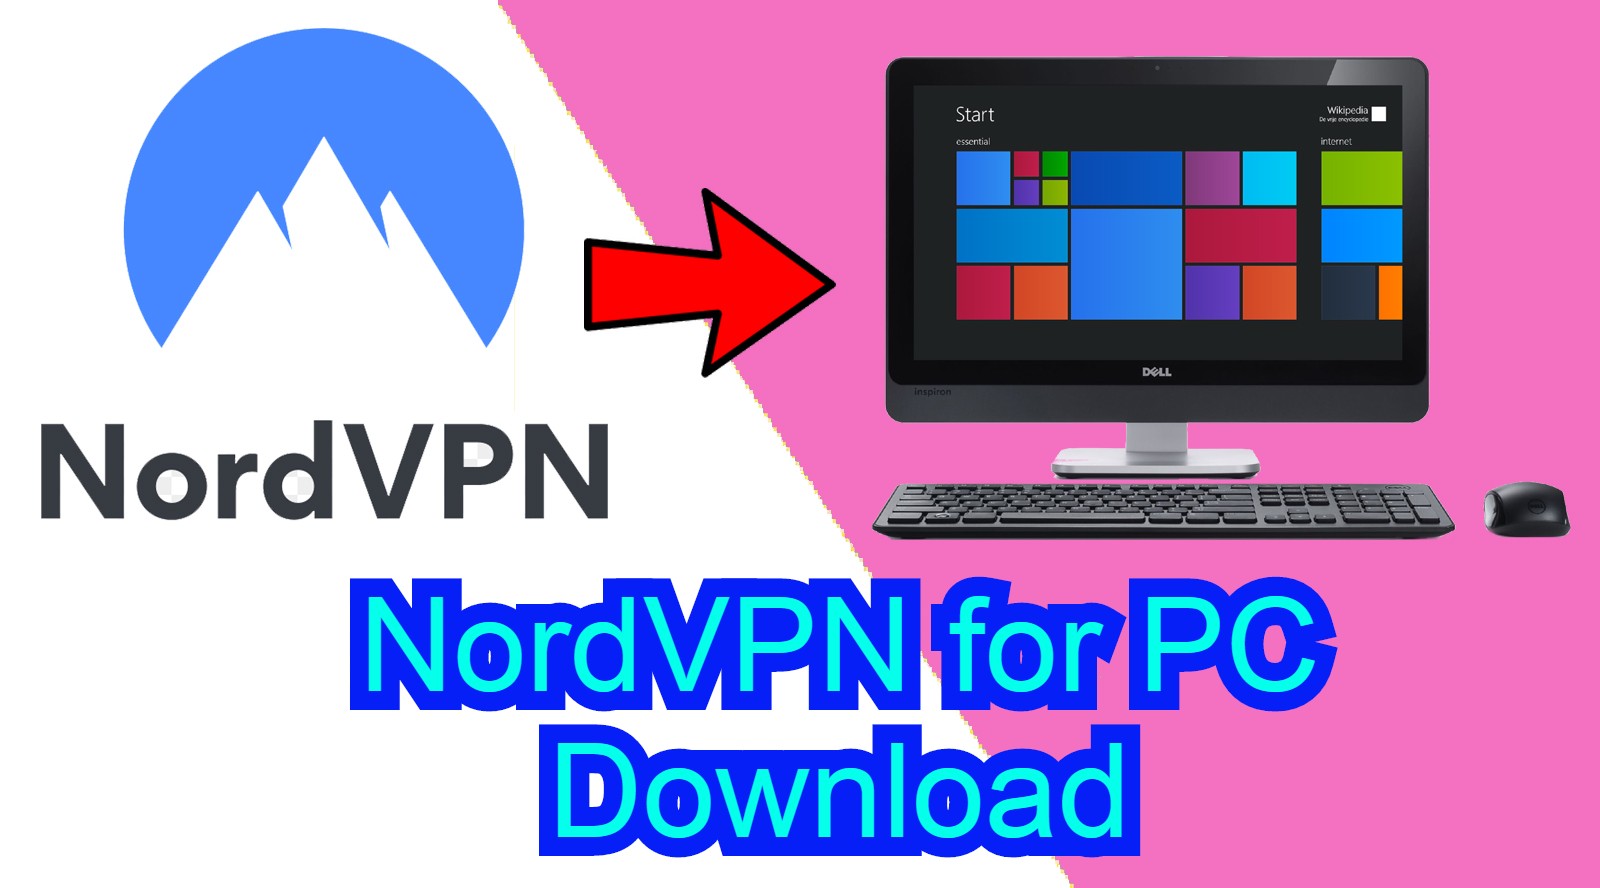 Nordvpn torrent download slow